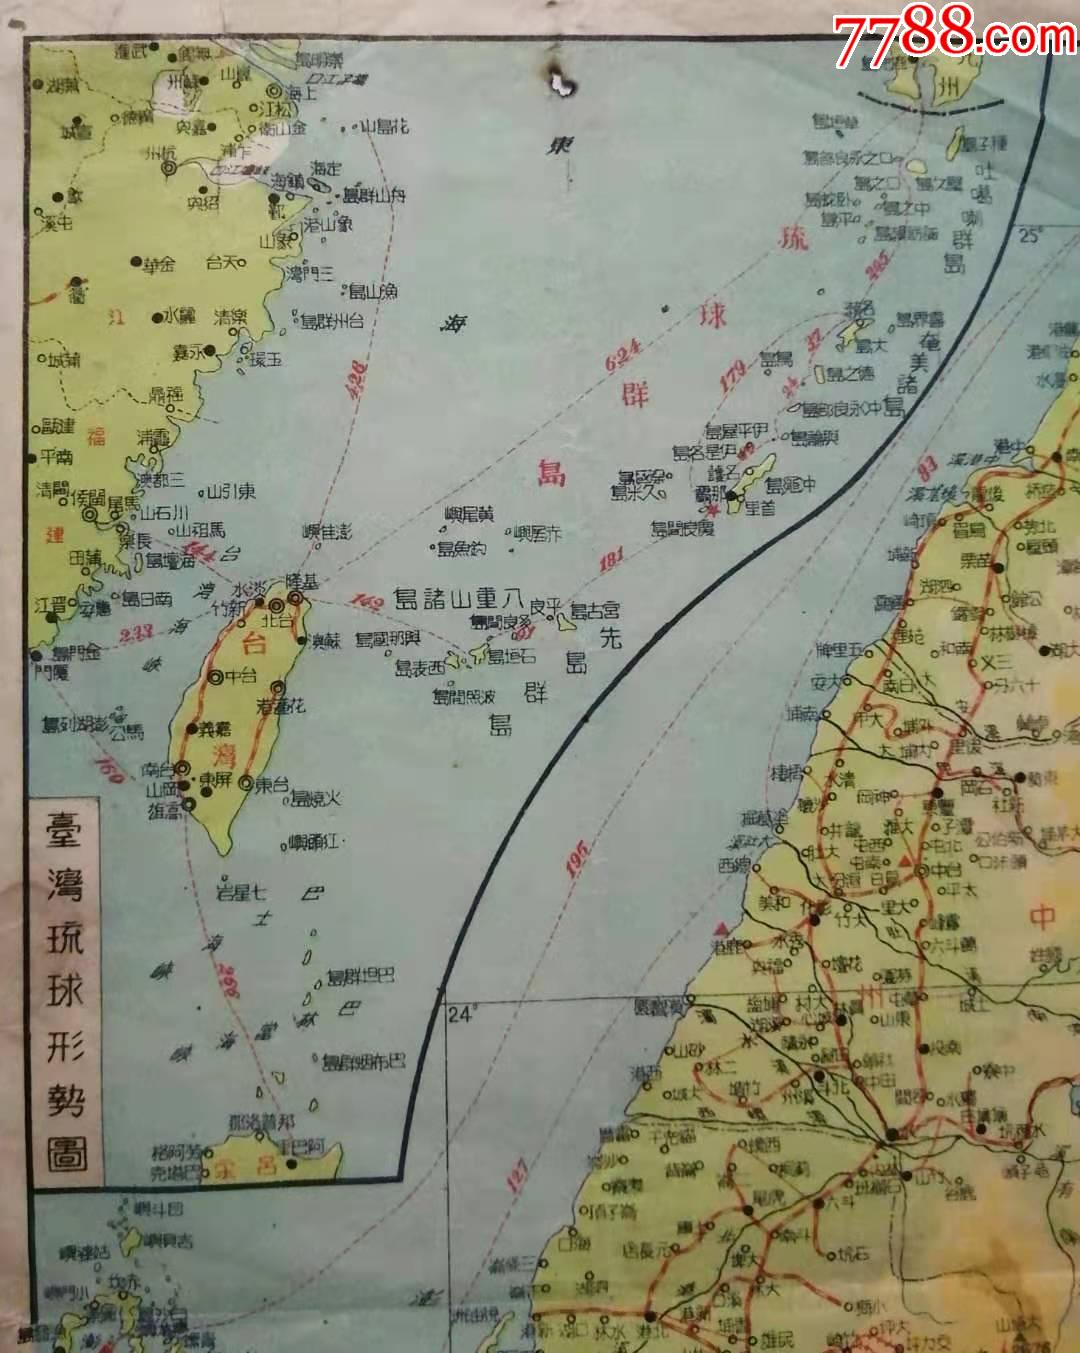 1944年《台湾地图,标注了*鱼,一张非常珍贵的民国时期台湾地图.